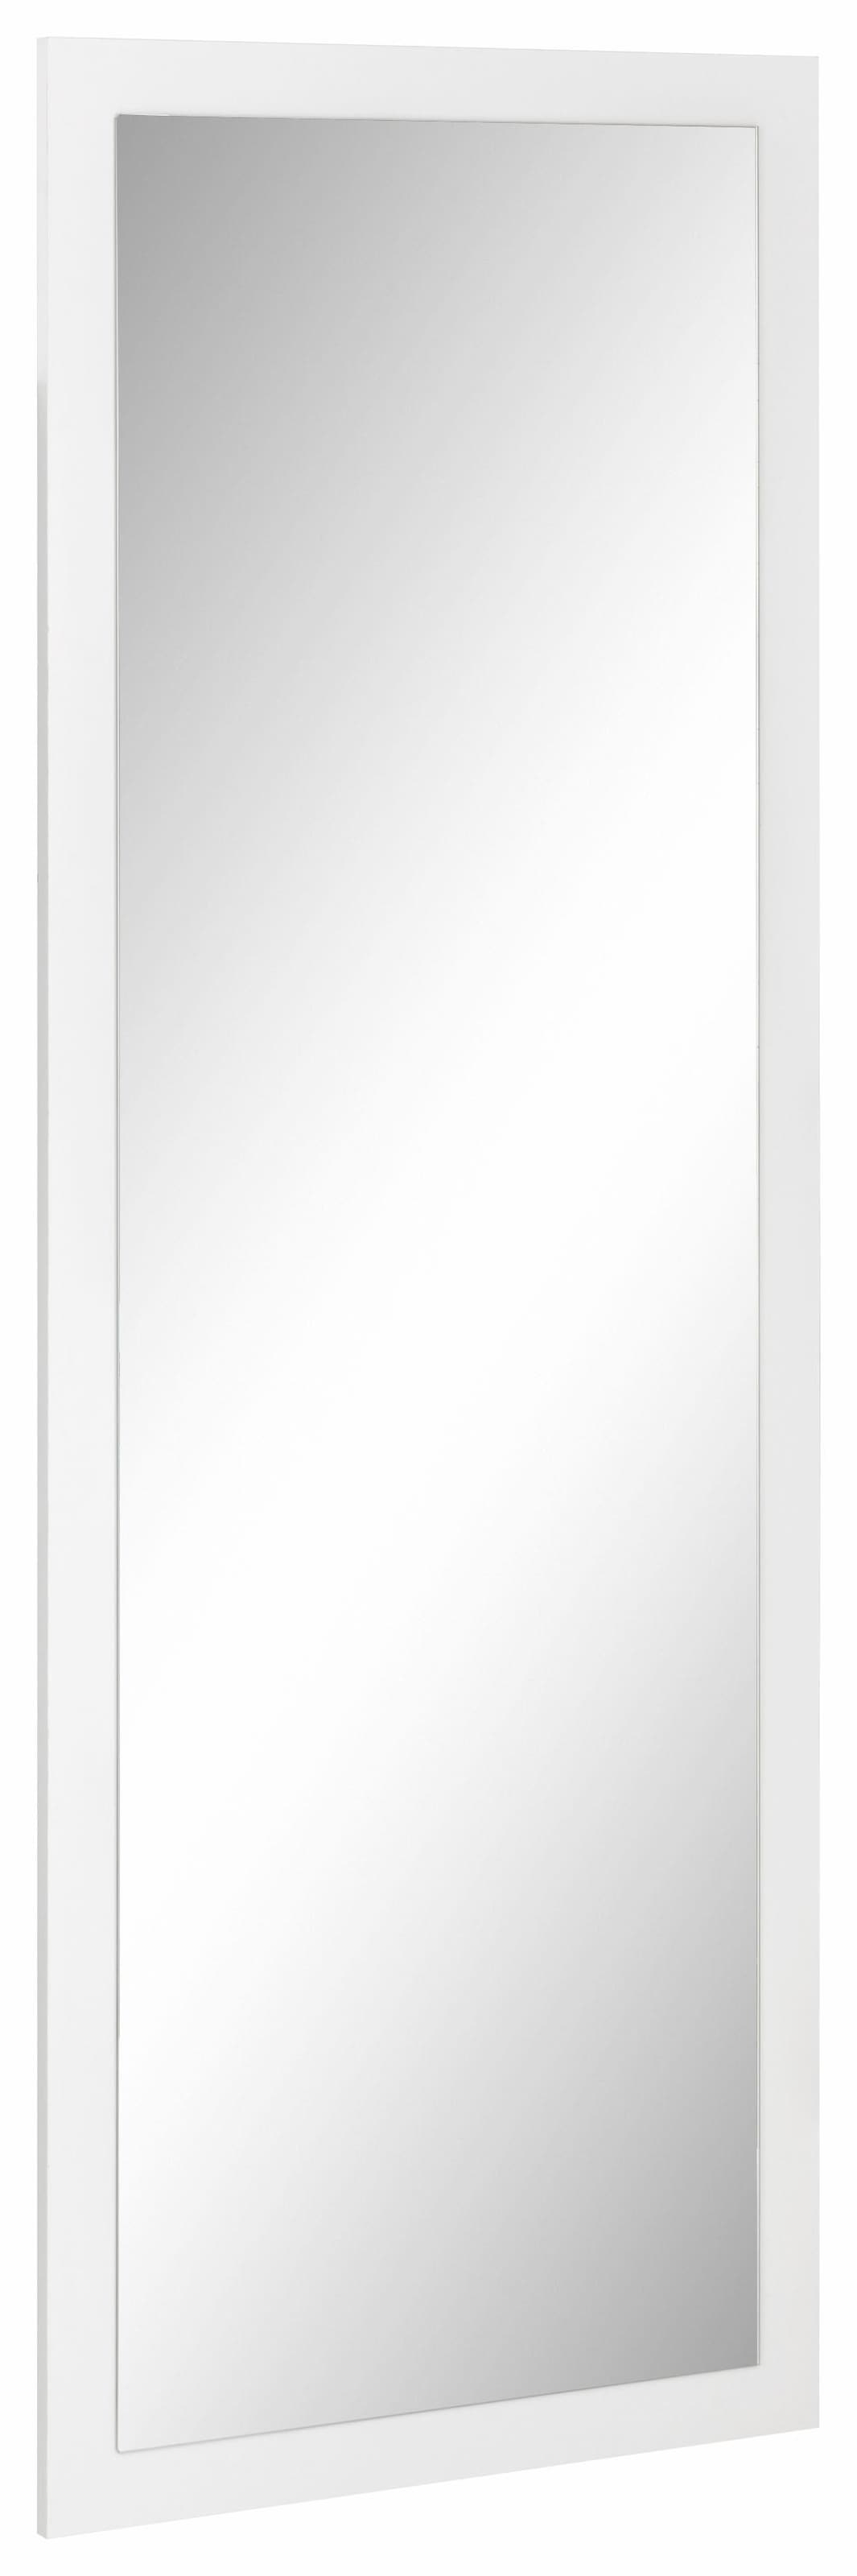 Artland Wandspiegel »Rahmenlos«, - rahmenloser für als inkl. kleiner Flurspiegel, Gäste-WC oder Spiegel/Mirror Wand Aufhängen Aufhänger Spiegel Schminkspiegel, Wohnzimmerspiegel, zum für Badspiegel/Badezimmerspiegel, Ganzkörperspiegel, die geeignet